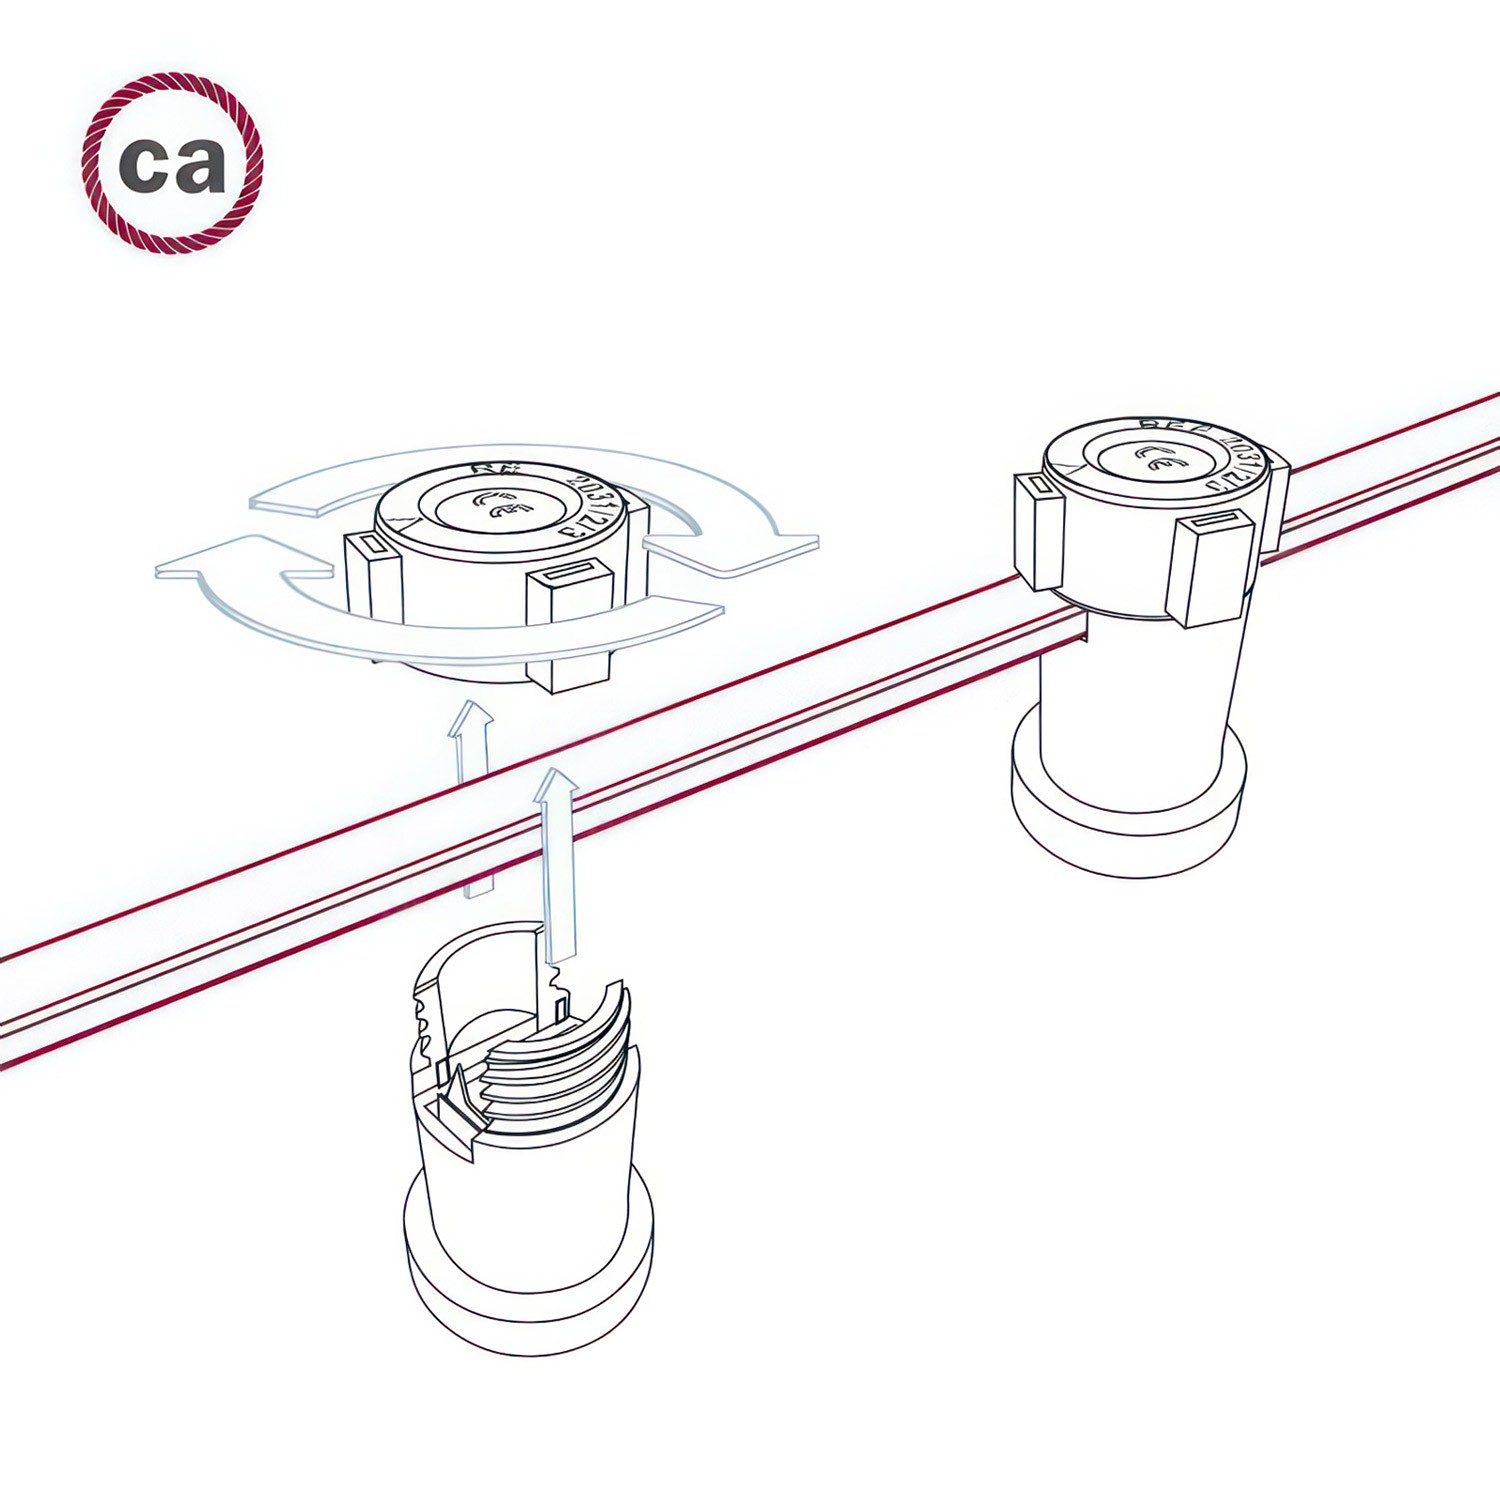 Tekstilni električni kabel za Svjetlosni lanac prekriven CM09 crvenim tekstilom - UV otporan